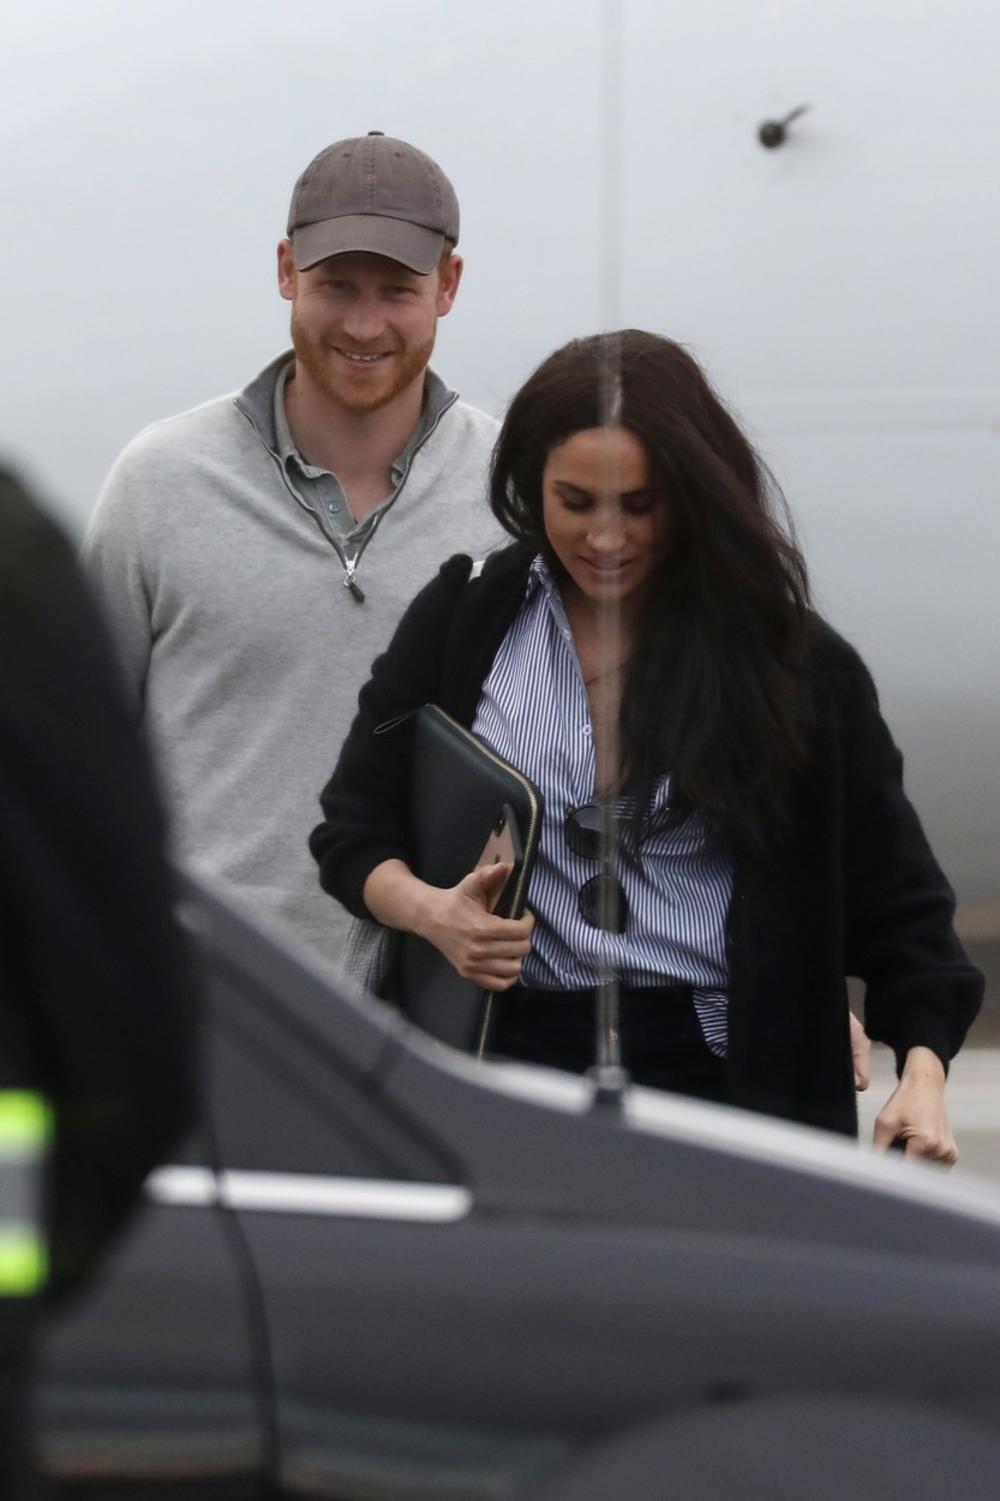 <p><strong>Megan Markl i princ Hari </strong>doputovali su u Kanadu nakon što su boravili u Sjedinjenim Američkim Državama, te su uslikani pri izlasku iz aviona.</p>